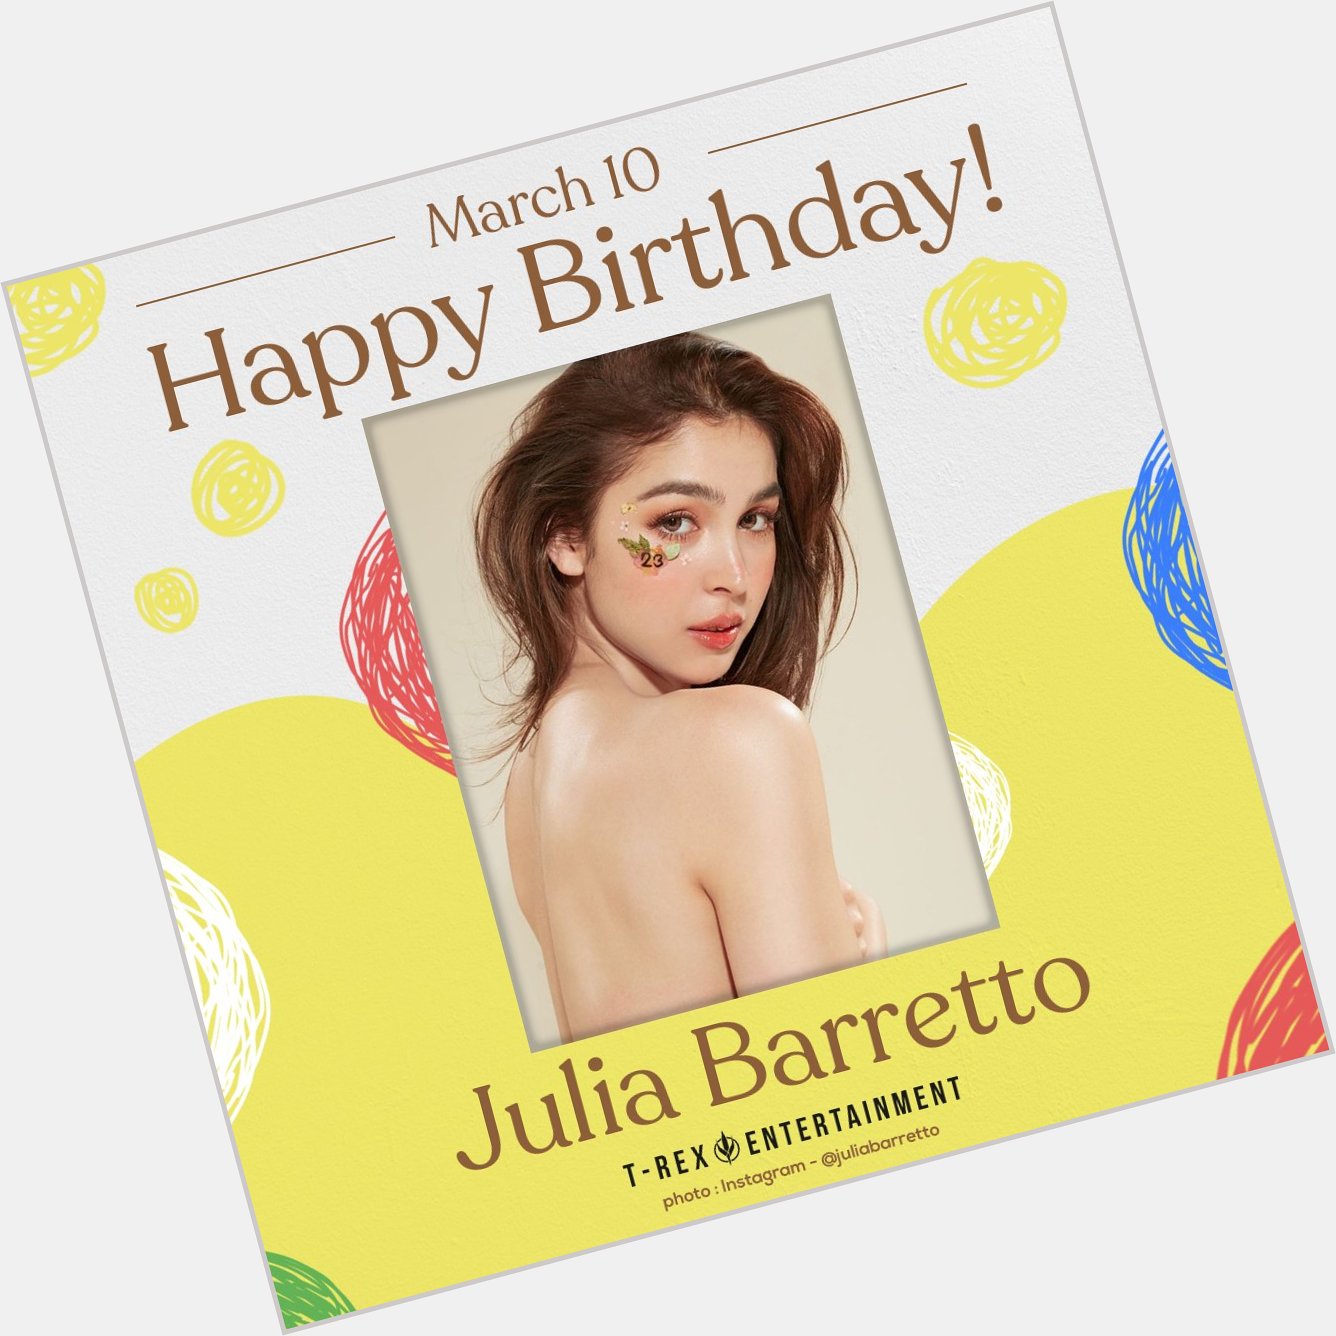 Happy 23rd birthday, Julia Barretto 